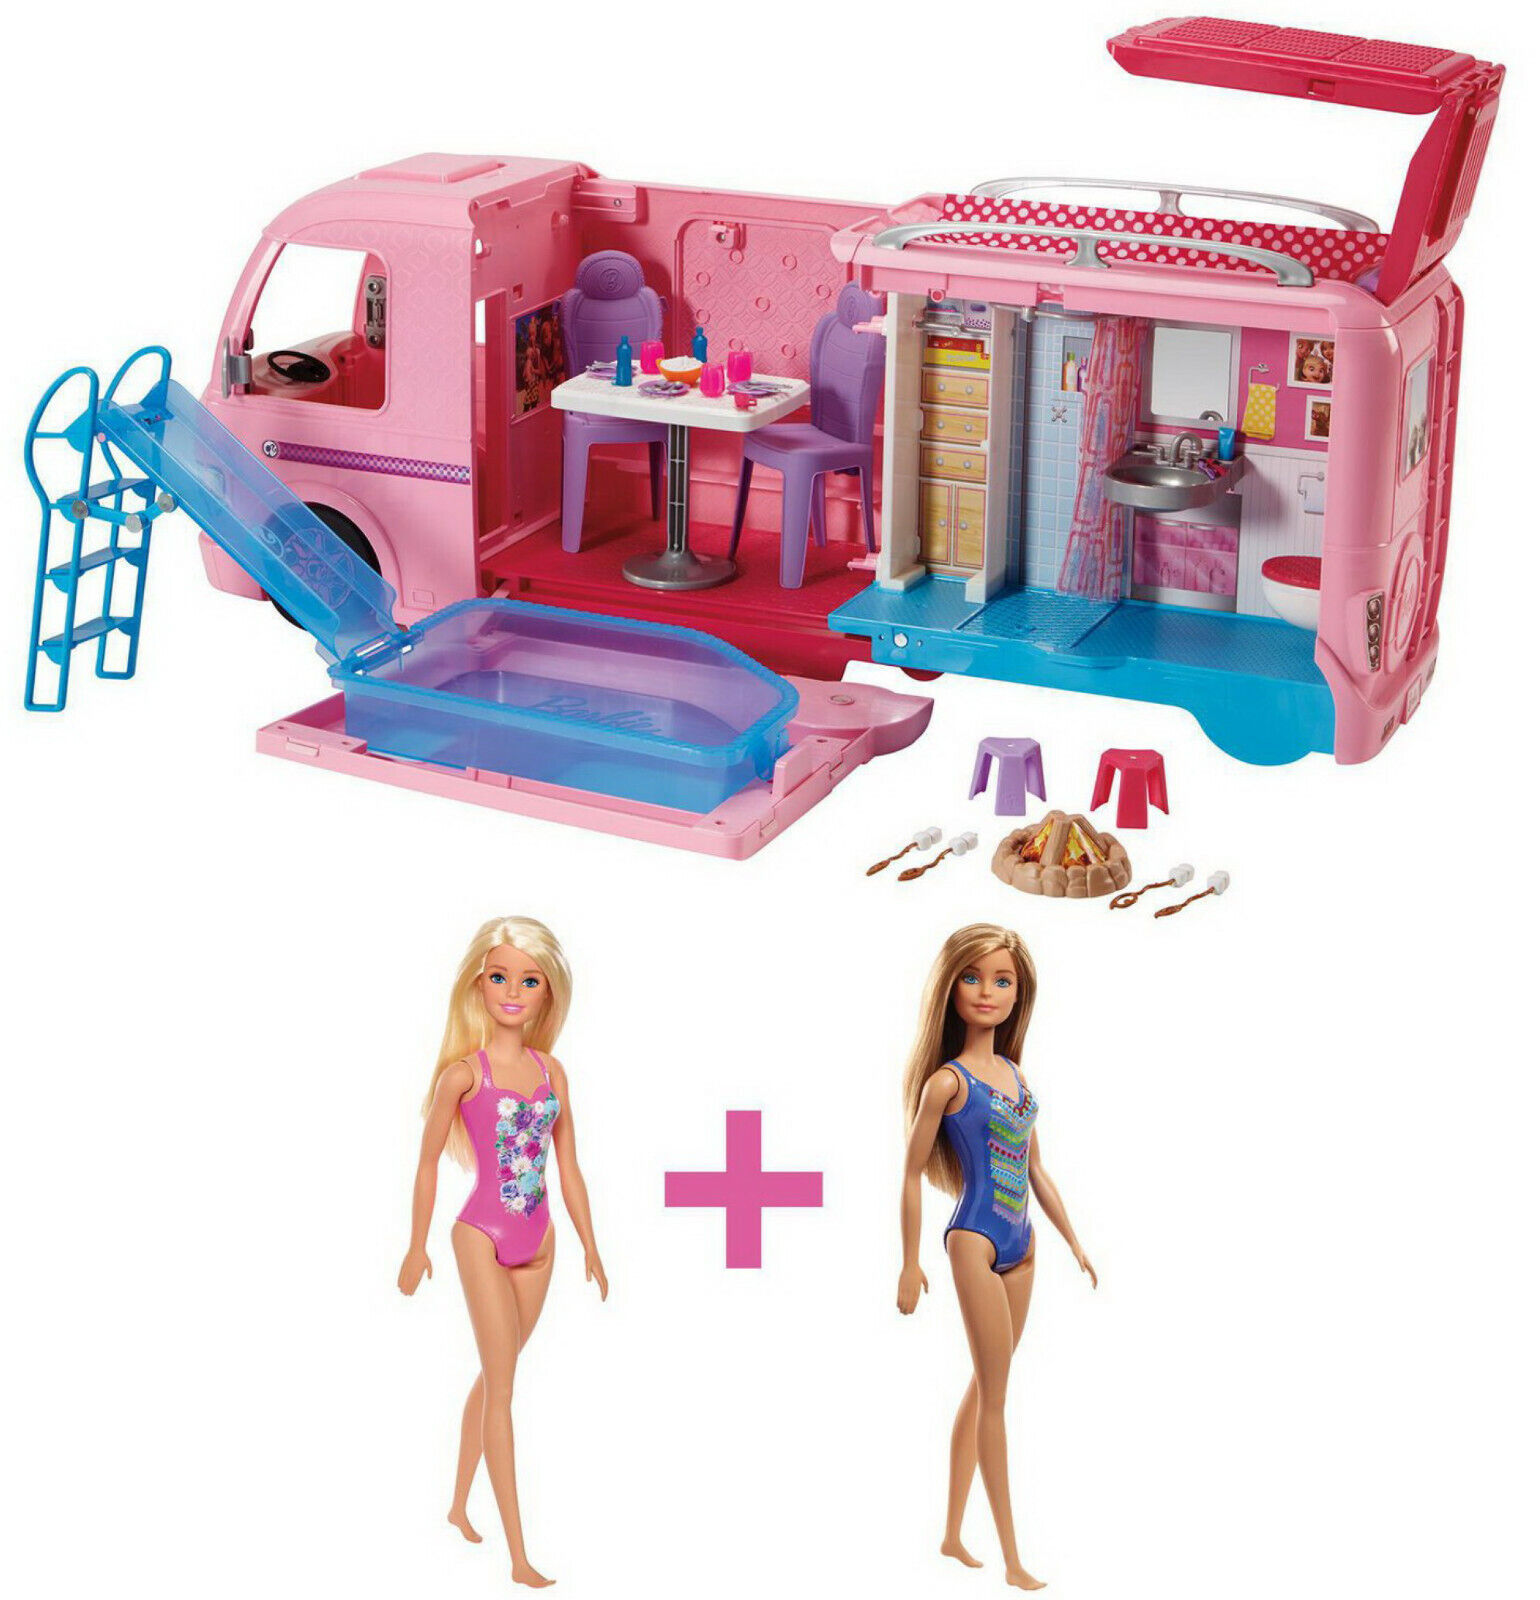 mattel barbie dream camper